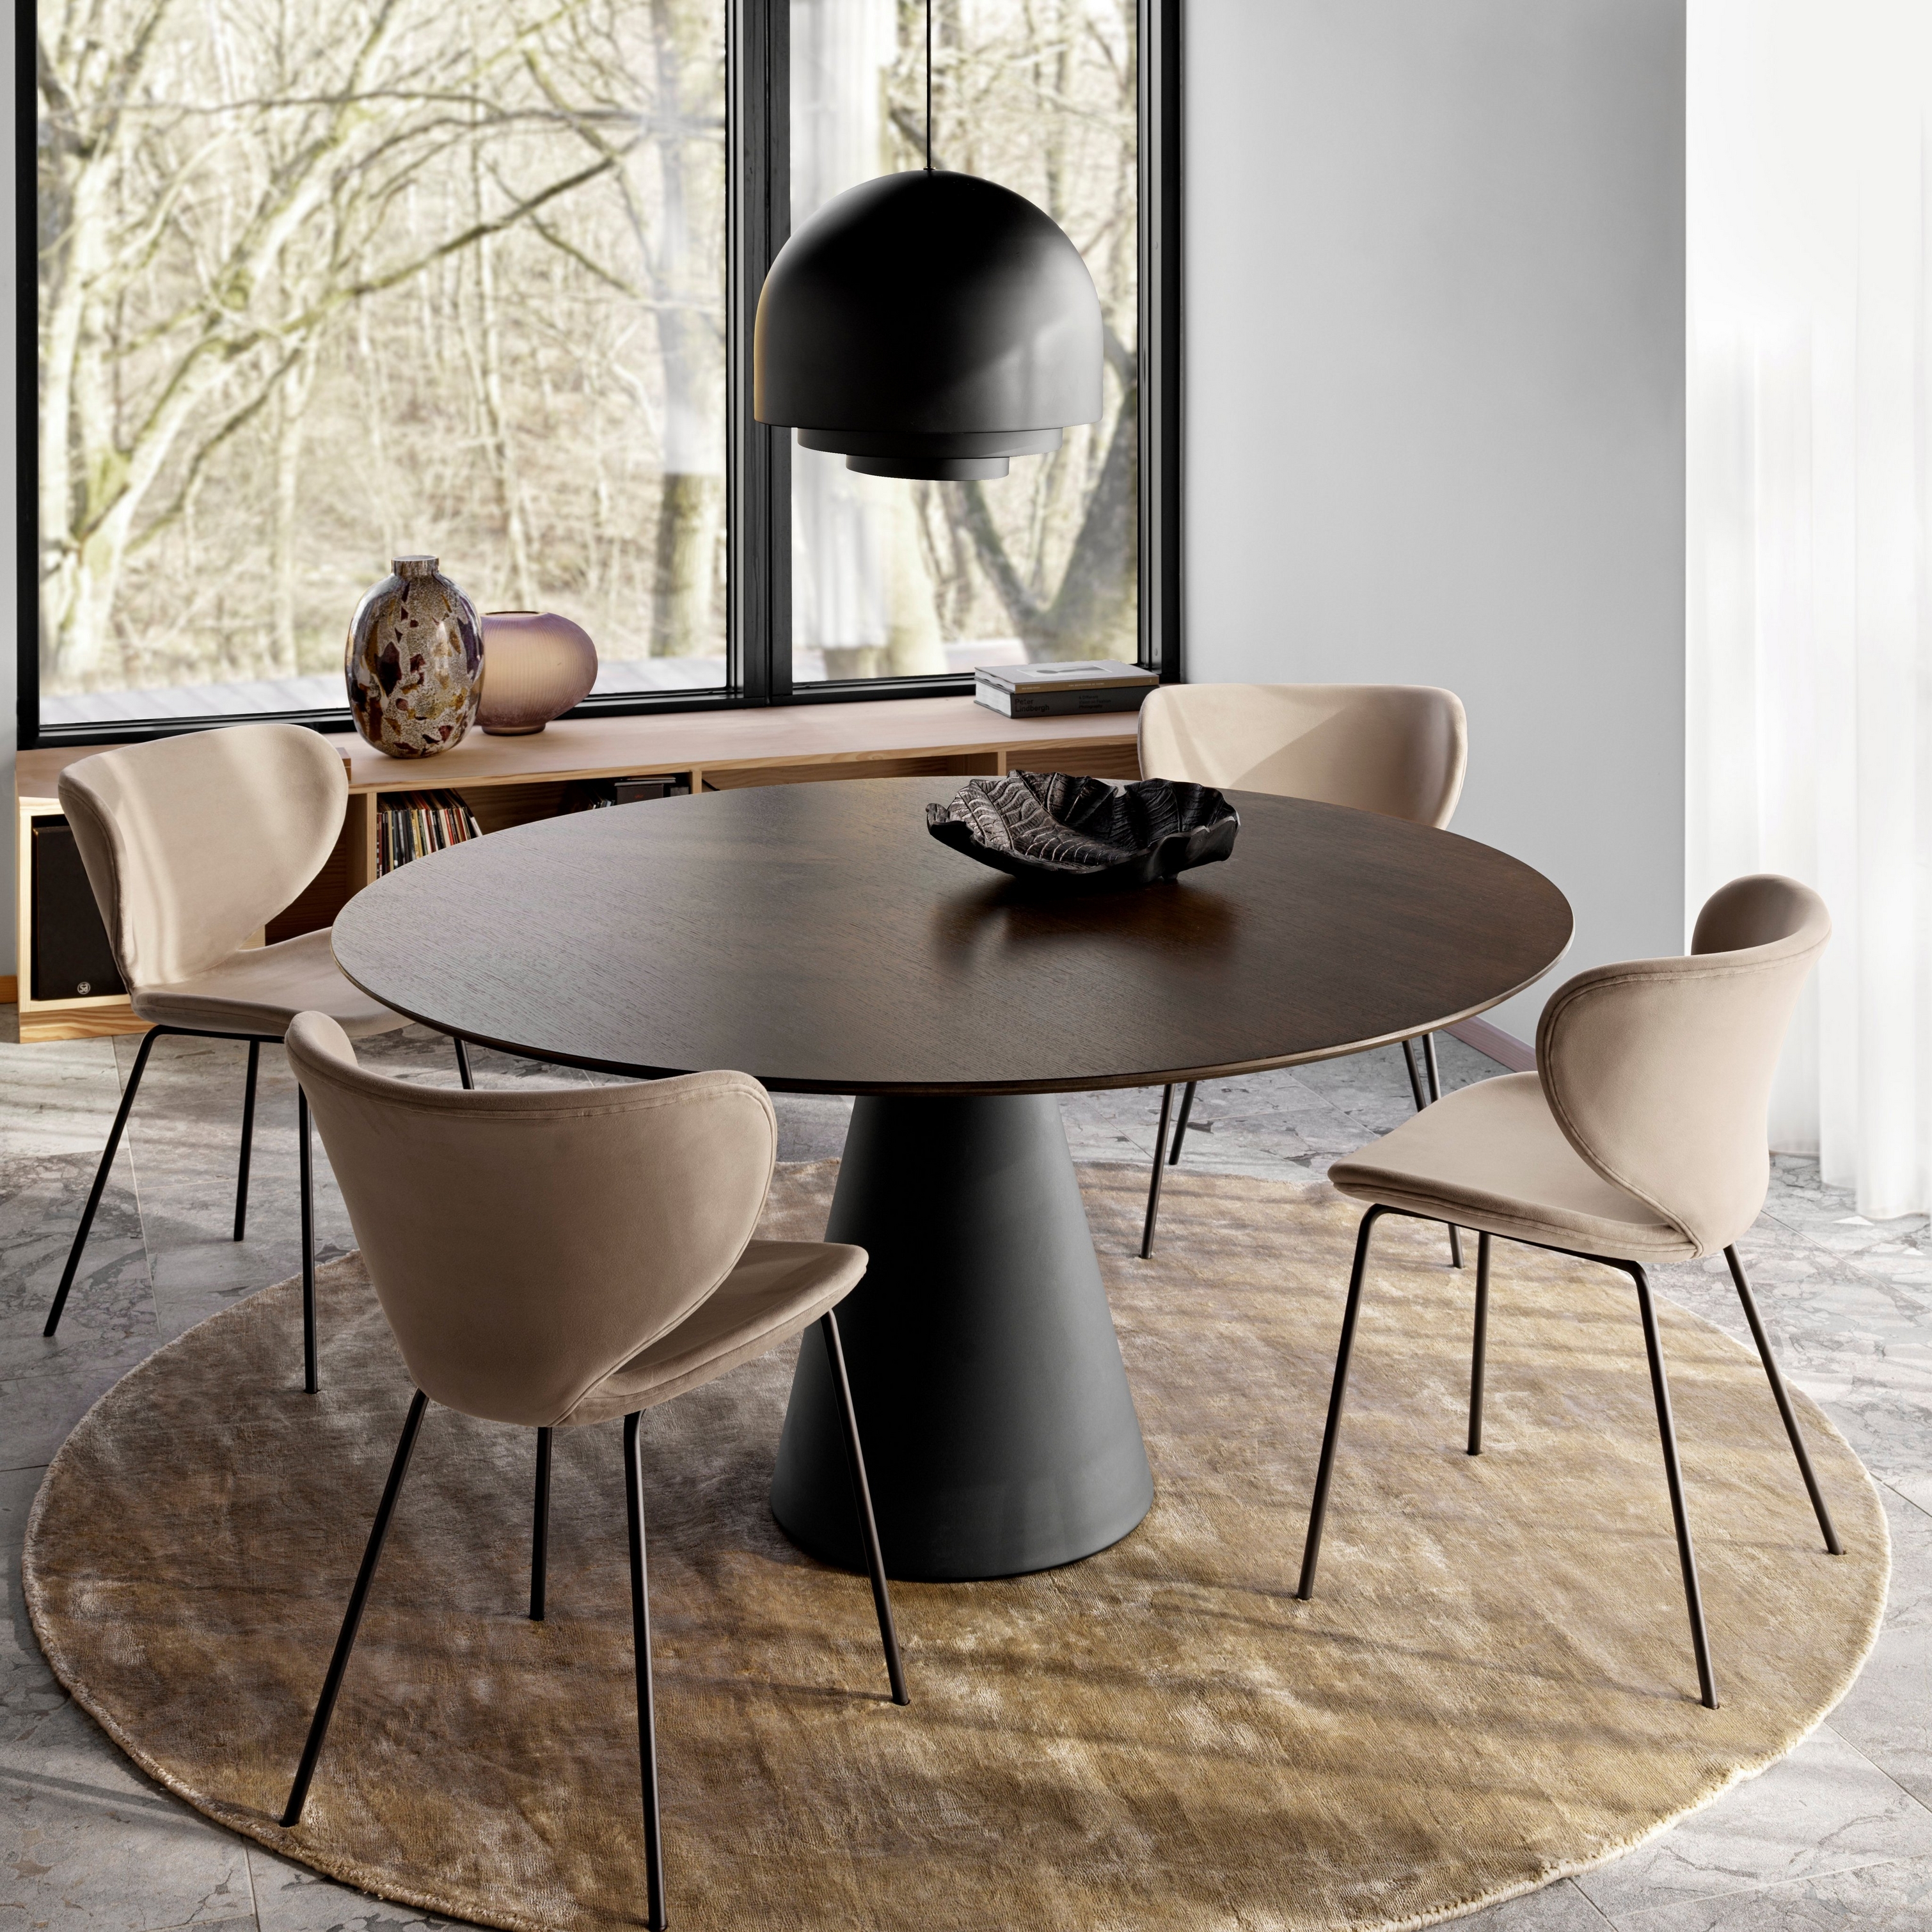 Круглый обеденный стол со стульями коричневого цвета на круглом ковре с большой подвесной лампой рядом с окнами от пола до потолка.